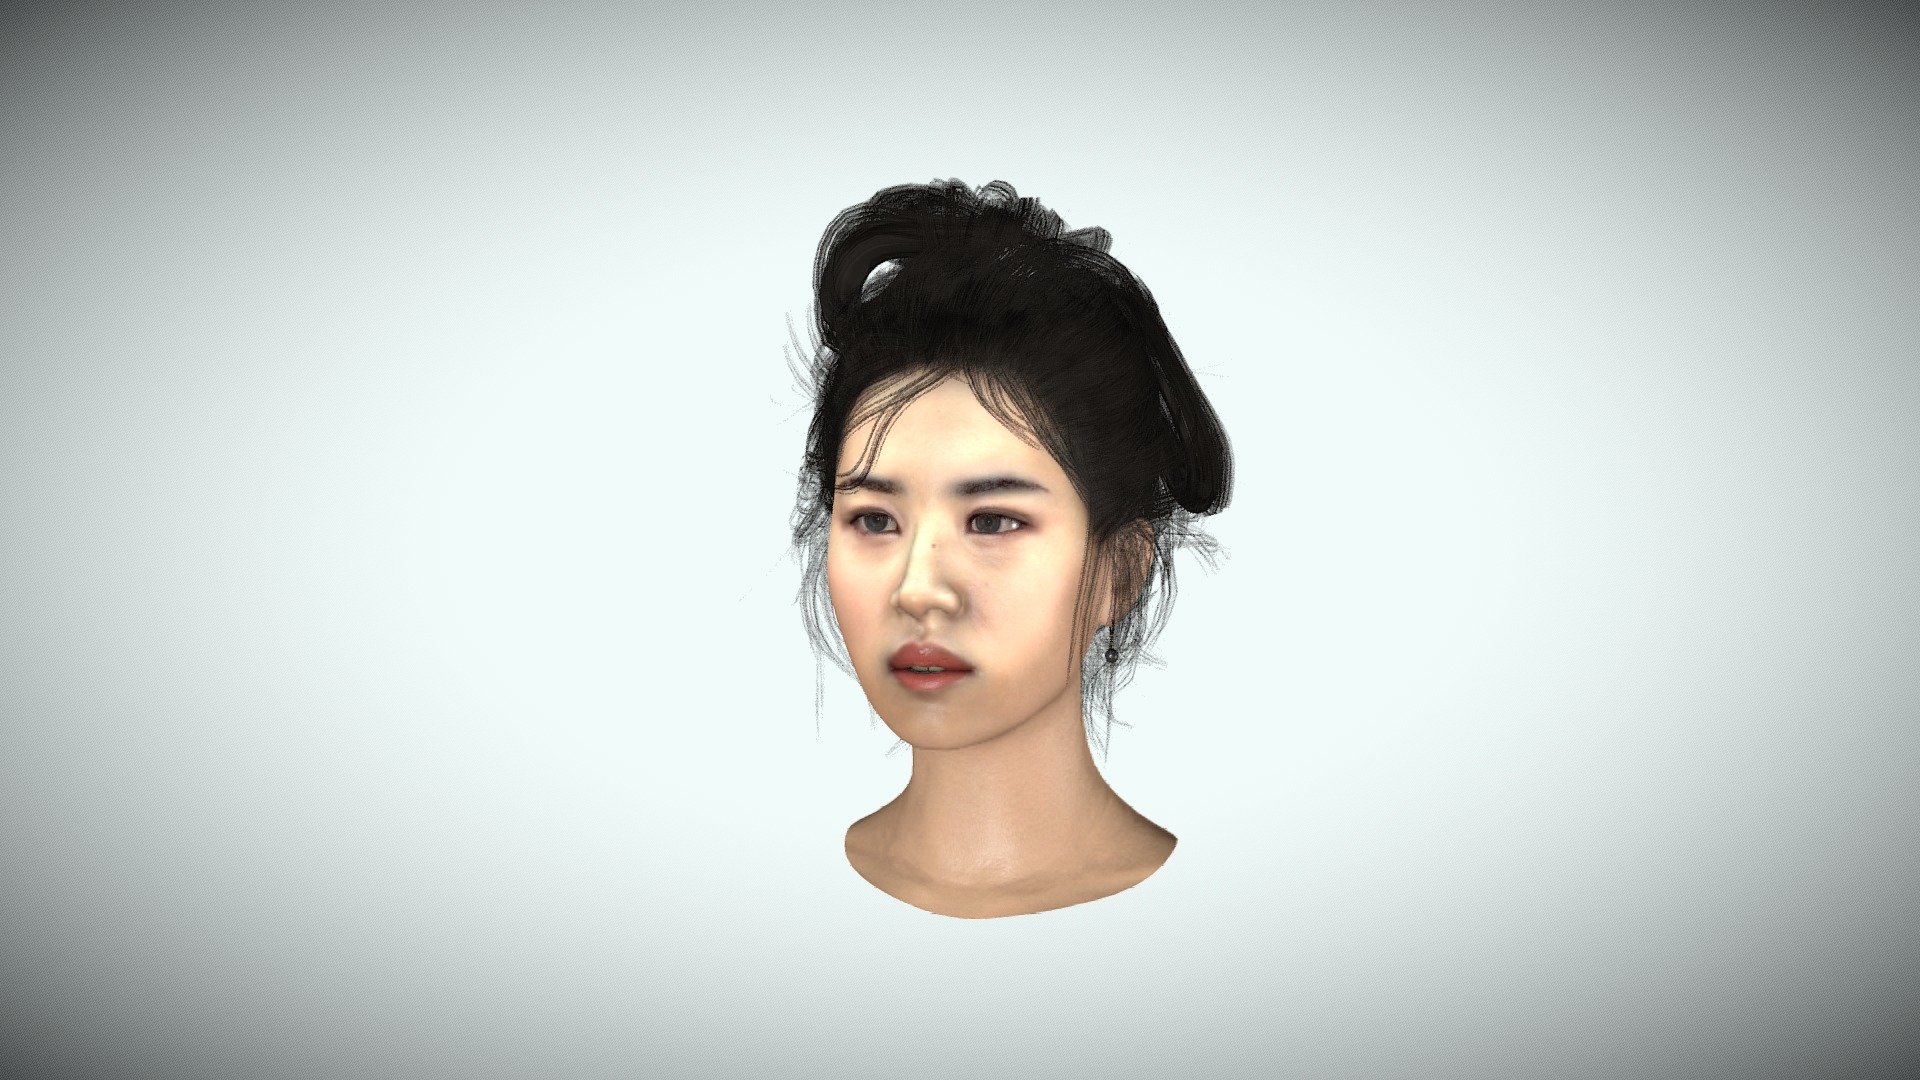 平平无奇的乡野村妇
Random ordinary countryside female with traditional hairstyle - Random ordinary countryside female -乡野村妇 - 3D model by Asashino (@gaoran0623) 3d model